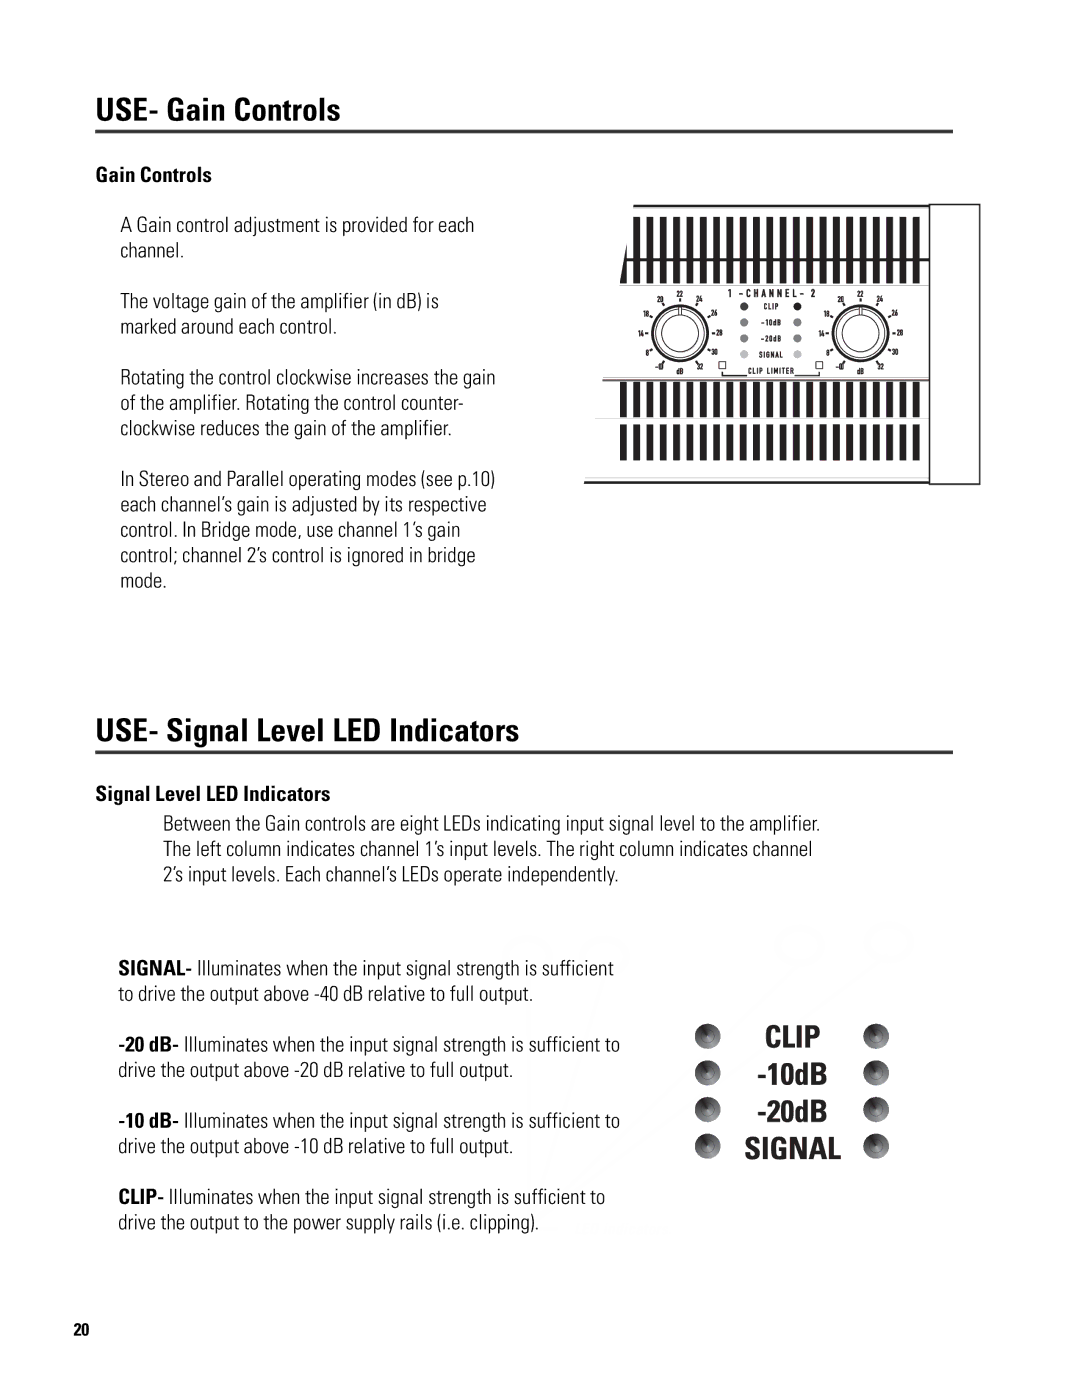 QSC Audio 6.0 II user manual USE- Gain Controls, USE- Signal Level LED Indicators 